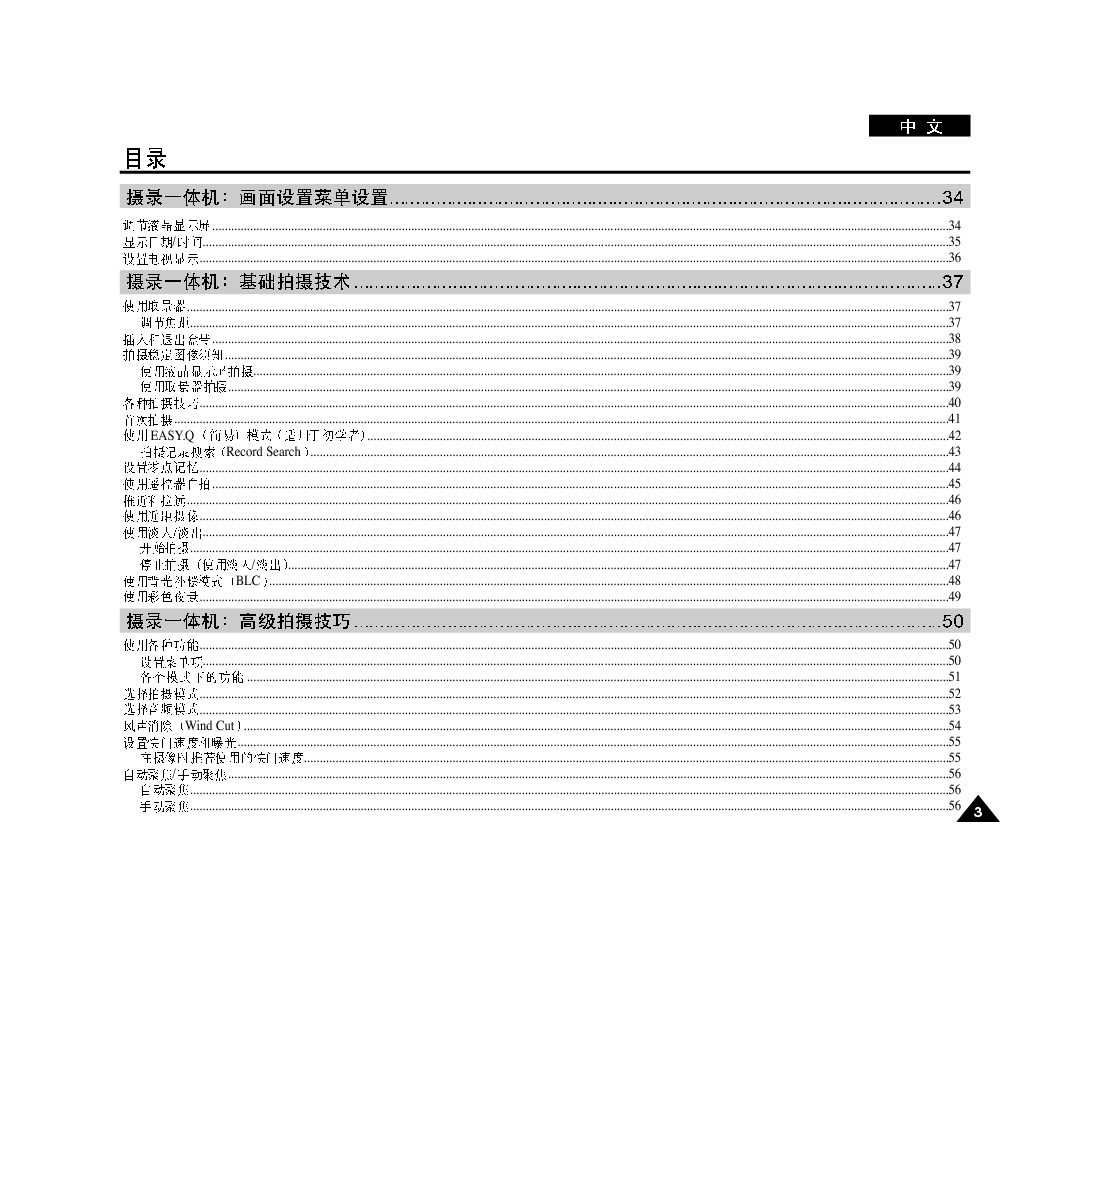 三星 Samsung VP-D6550 用户指南 第2页